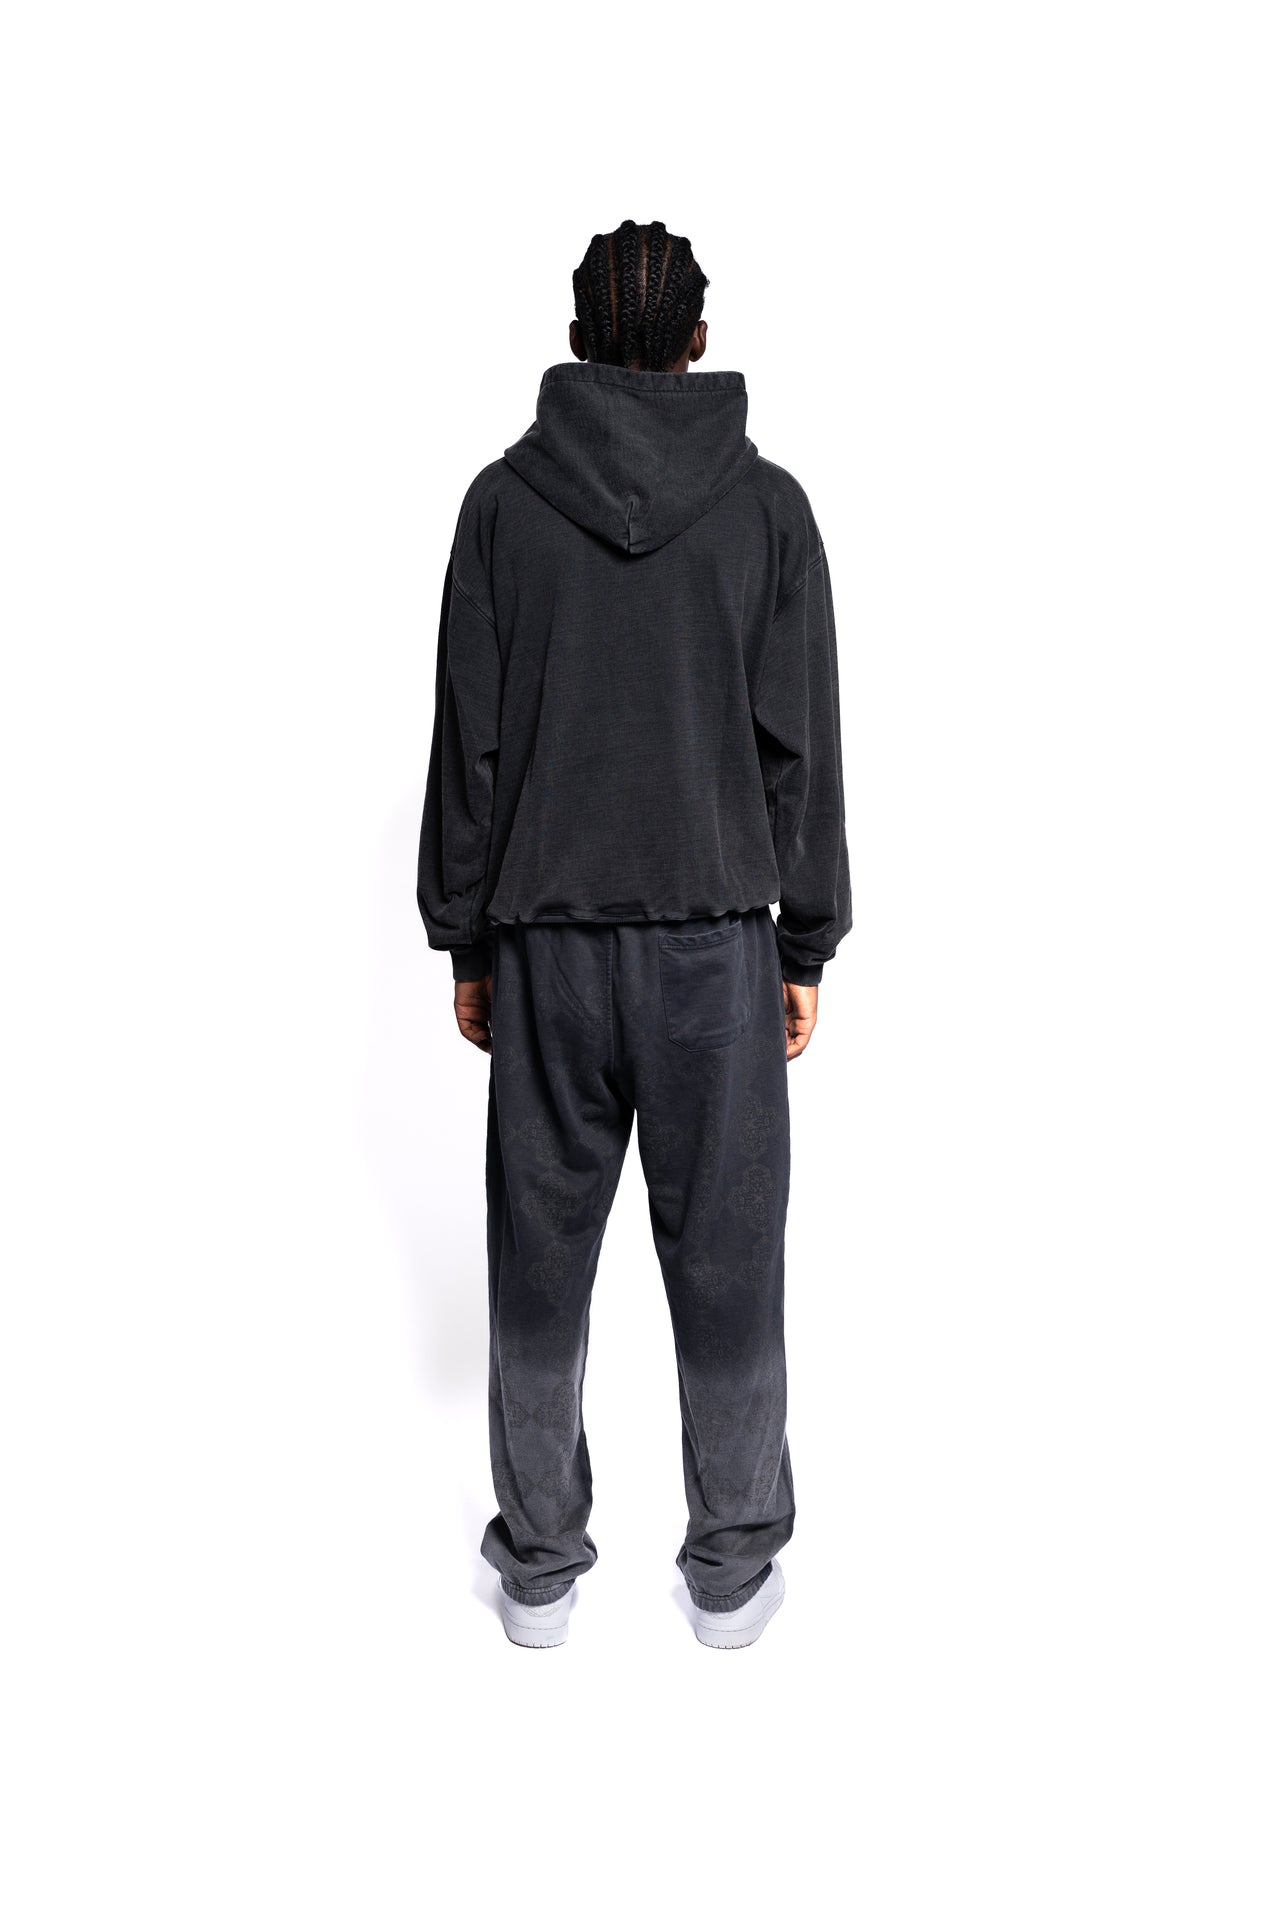 Rückansicht des schwarzen D Lab Hoodies für Herren, betont lässigen Komfort und zeitgemäßes Design für den modernen Kleiderschrank